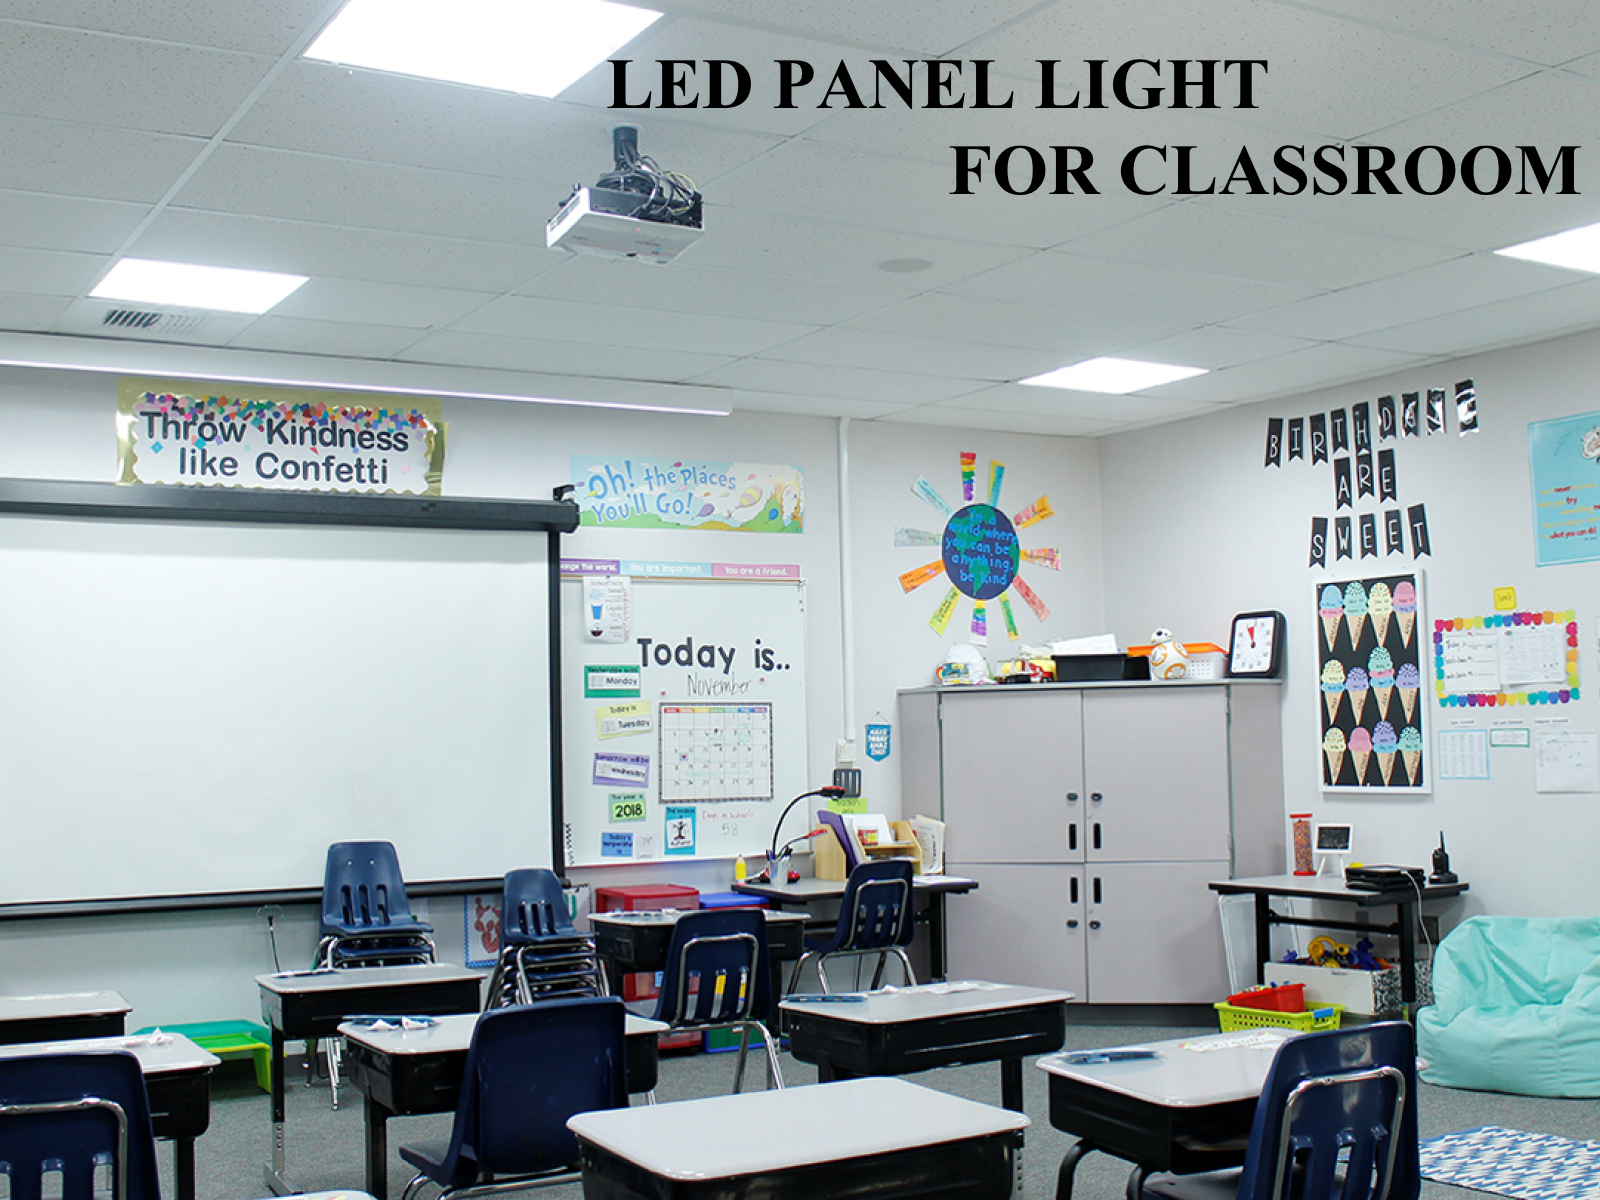 Requisitos de iluminación, potencia, temperatura de color y especificaciones de instalación de lámparas LED para aulas